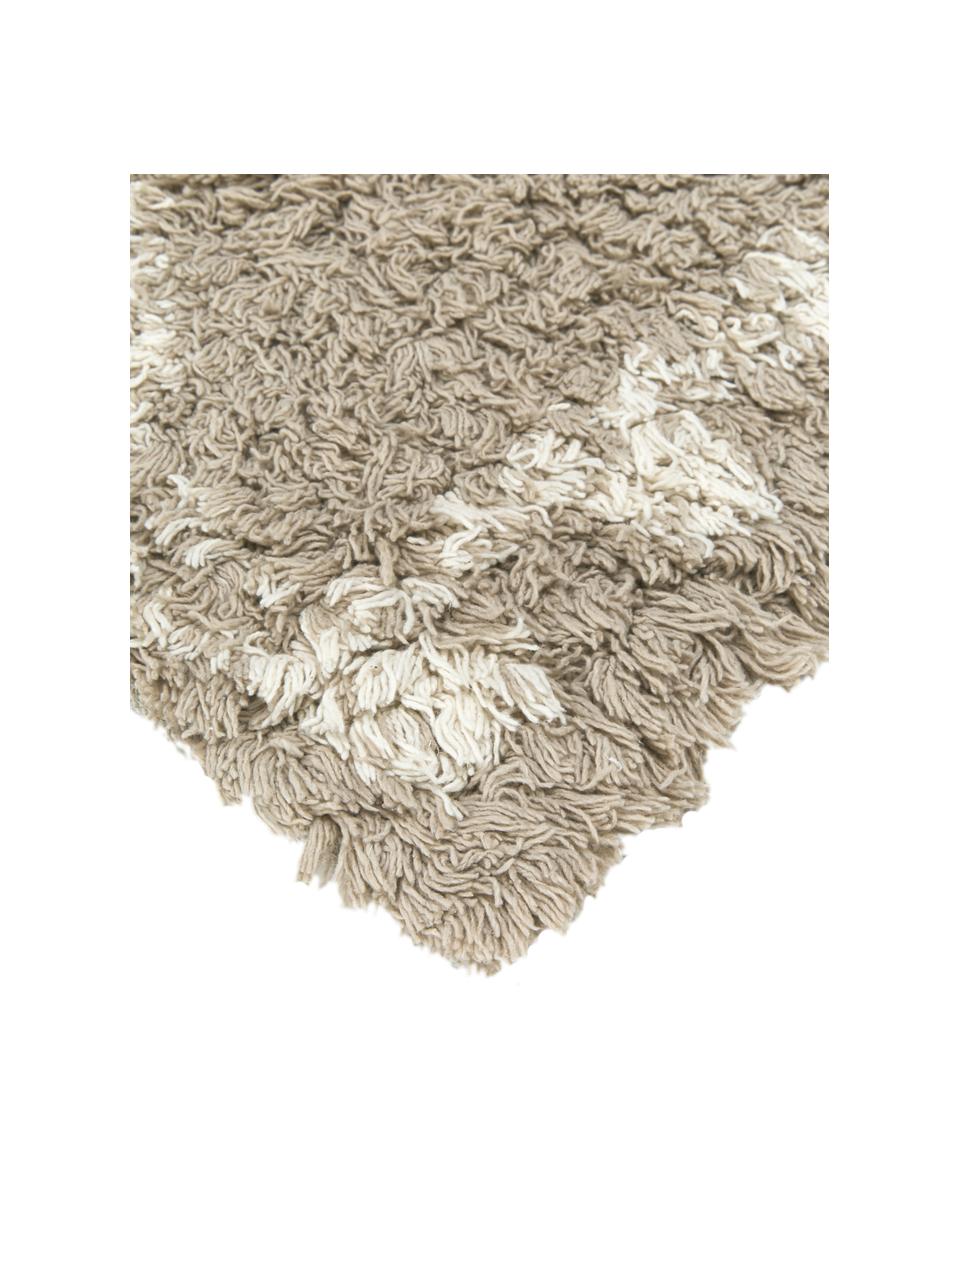 Hoogpolig vloerkleed Beni van katoen in beige, 100% katoen, Beige, wit, B 200 x L 300 cm (maat L)